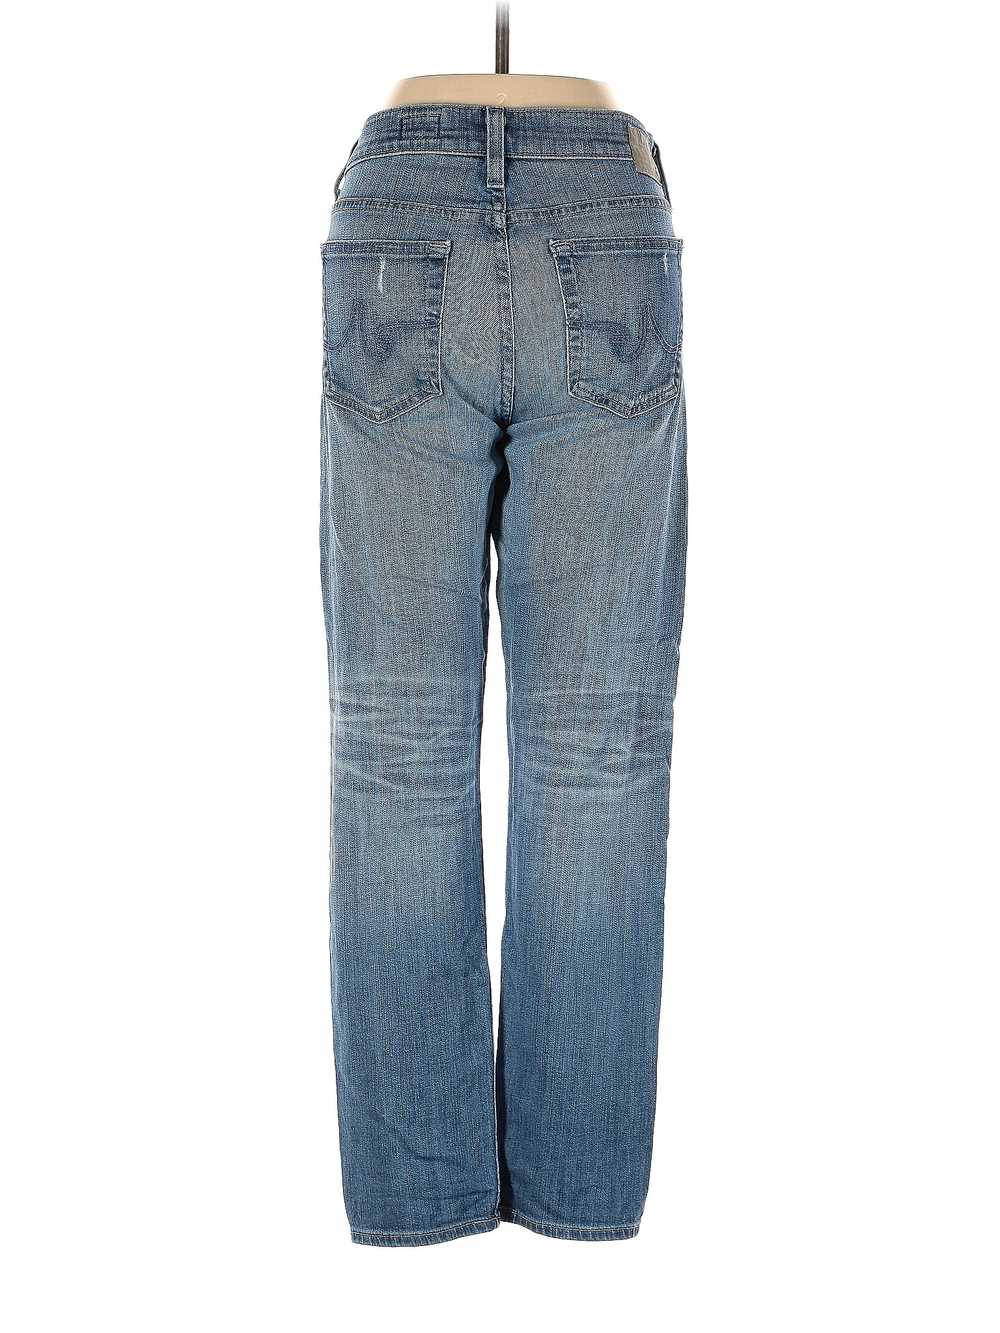 Adriano Goldschmied Women Blue Jeans 27W - image 2